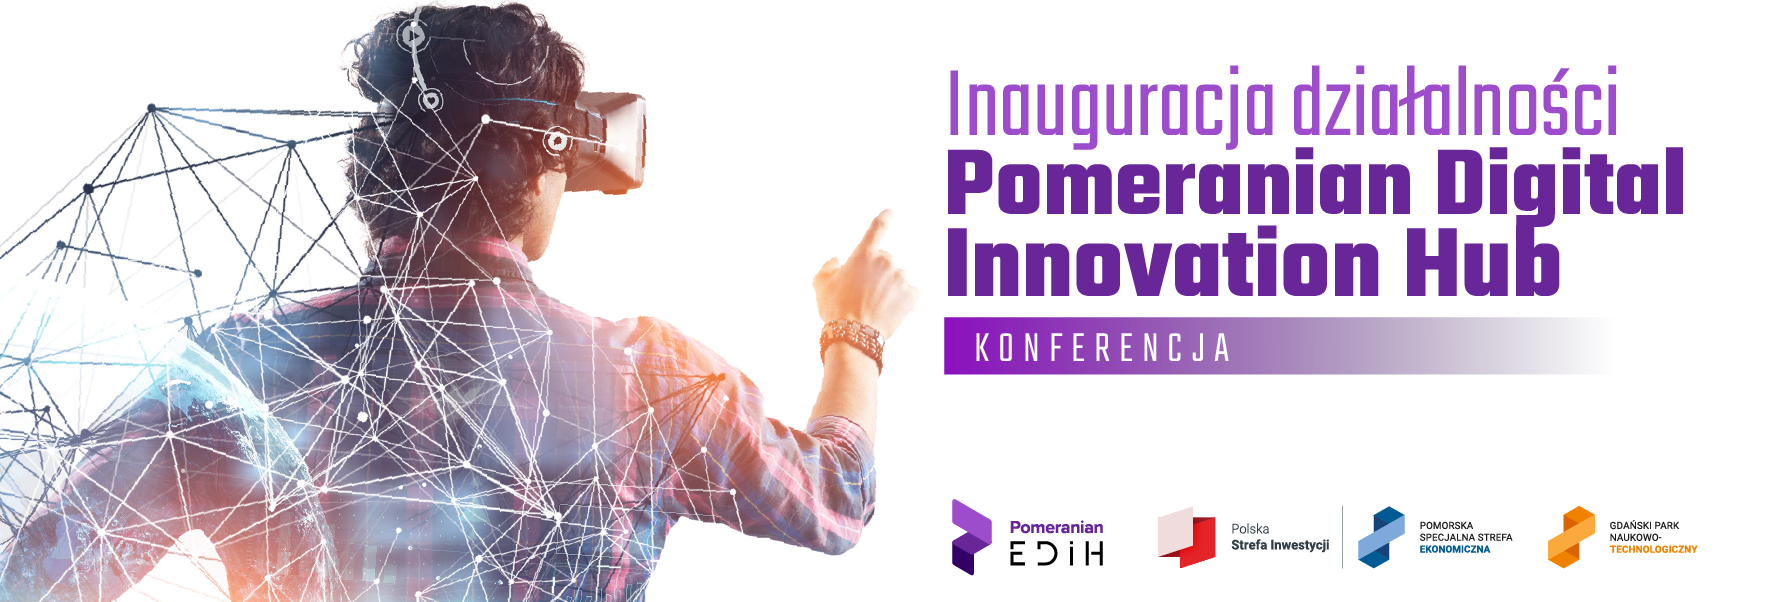 Pomeranian Digital Innovation Hub – cyfrowa transformacja dla MŚP